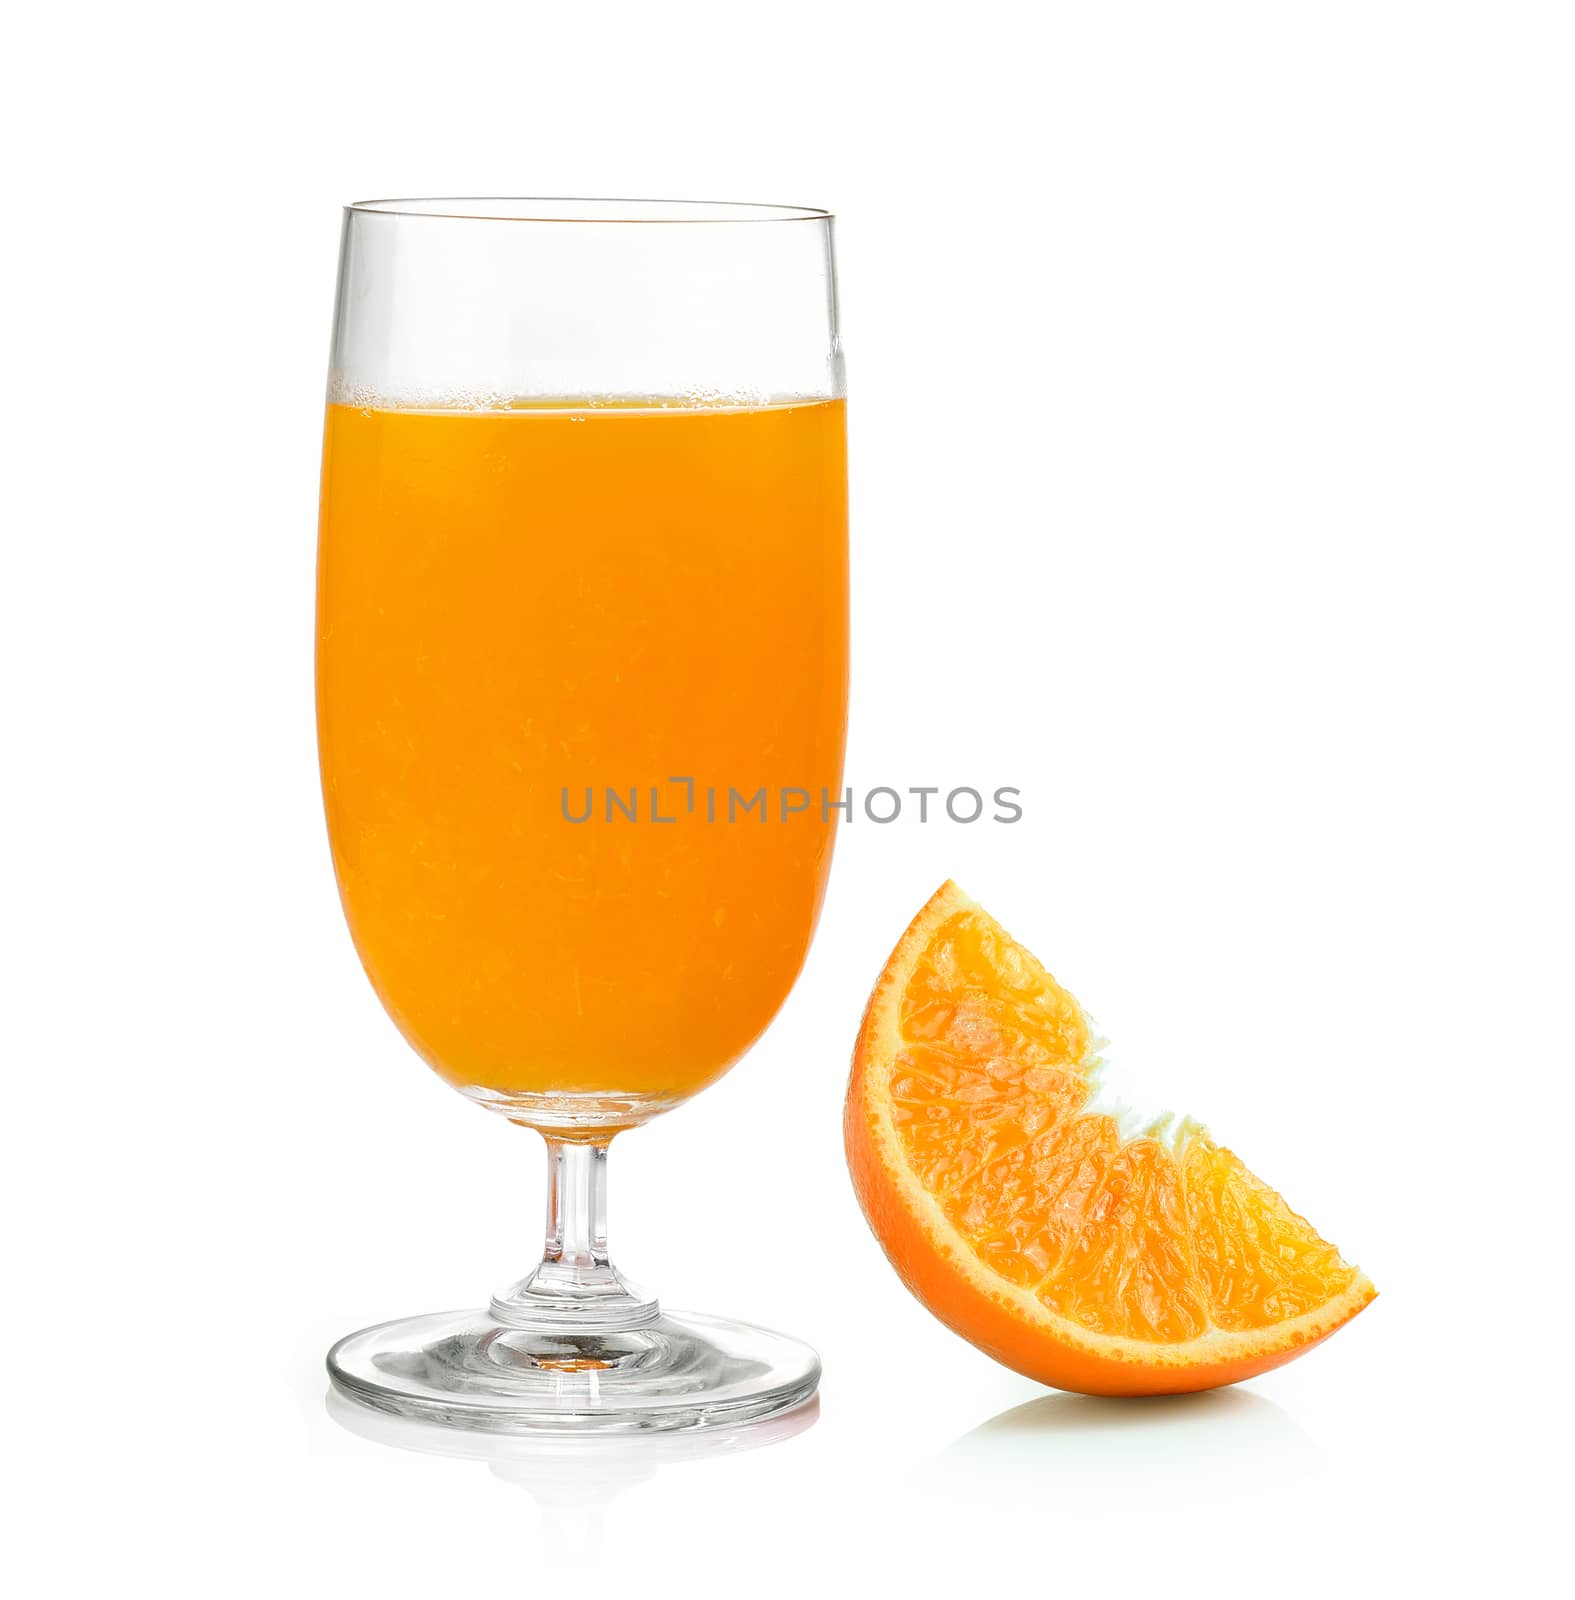 Orange juice and orange isolated on white background